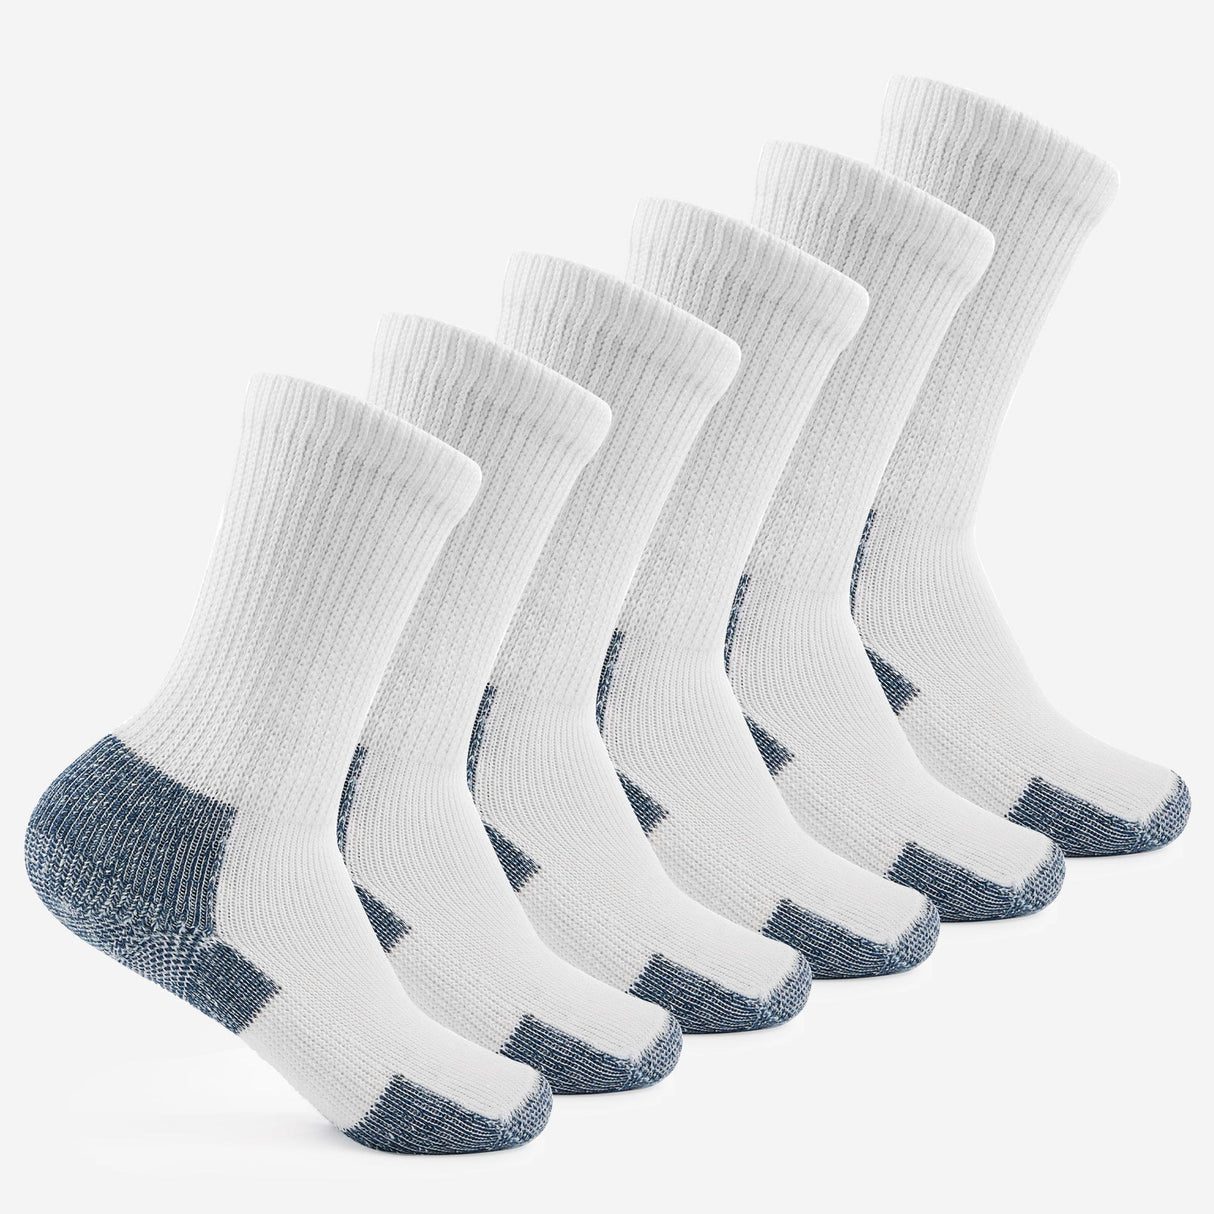 Thorlo Maximum Cushion Crew Running Socks  -  Large / White/Navy / 6-Pair Pack